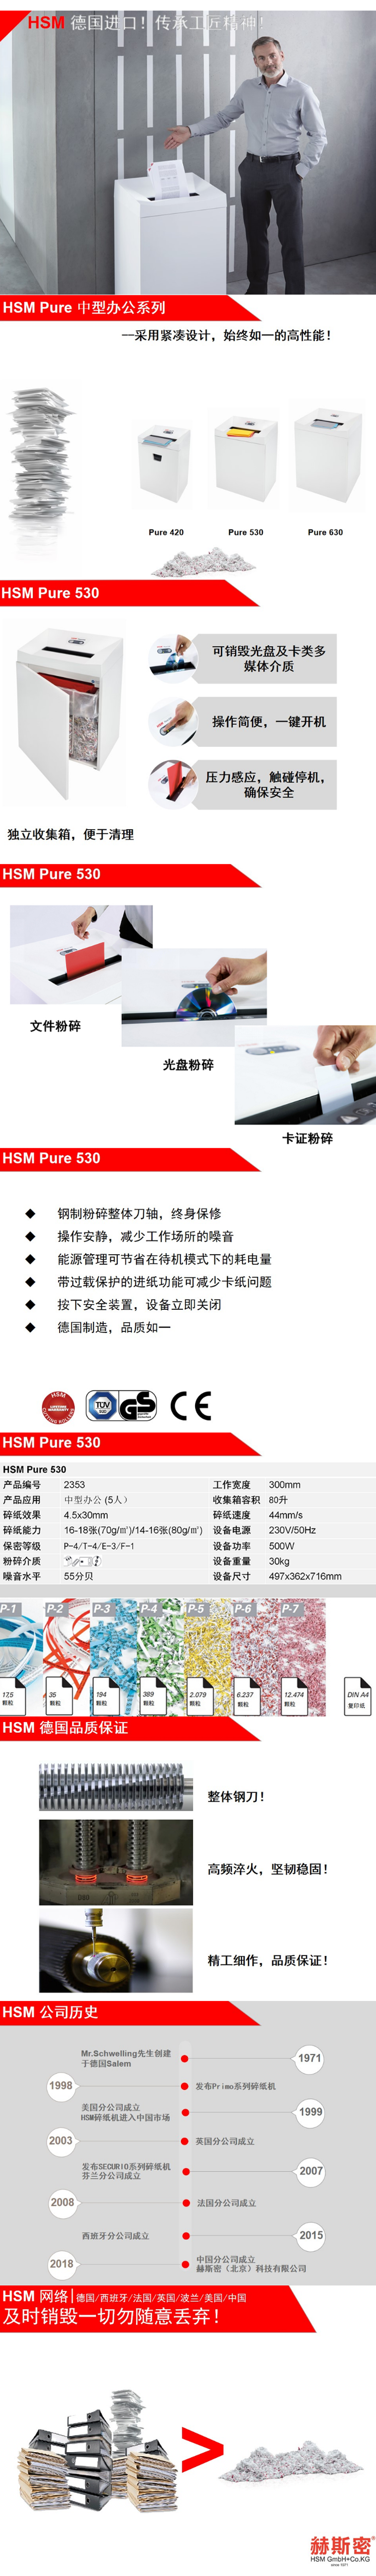 【赫斯密Pure 530】赫斯密（HSM) Pure 530 碎纸机 4.5x30mm 4级保密【行.png